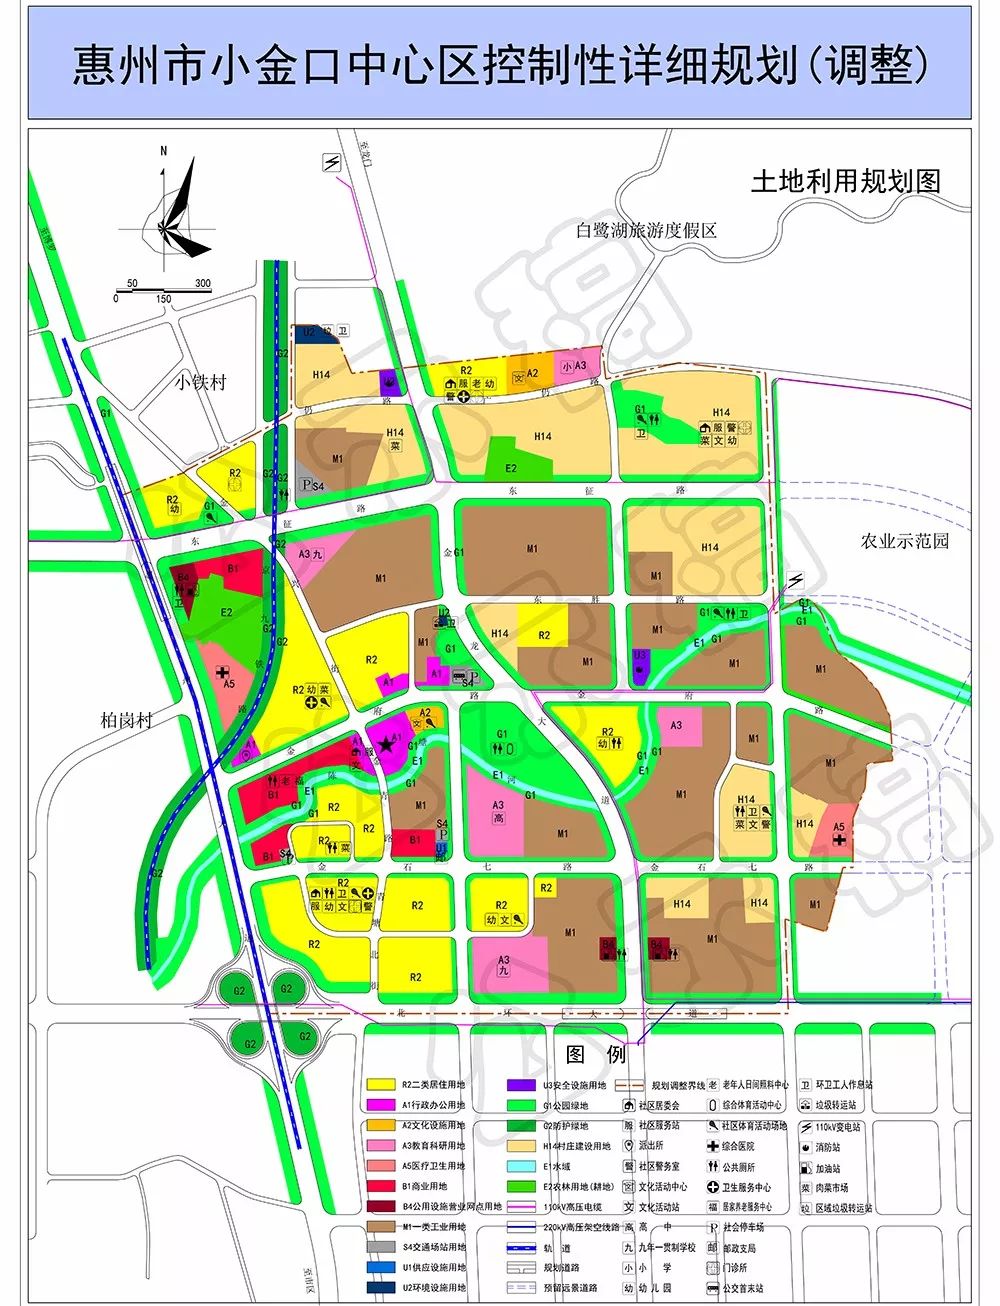 规划4所中小学,充沛的公园绿地……惠州这个片区又将有新变化!